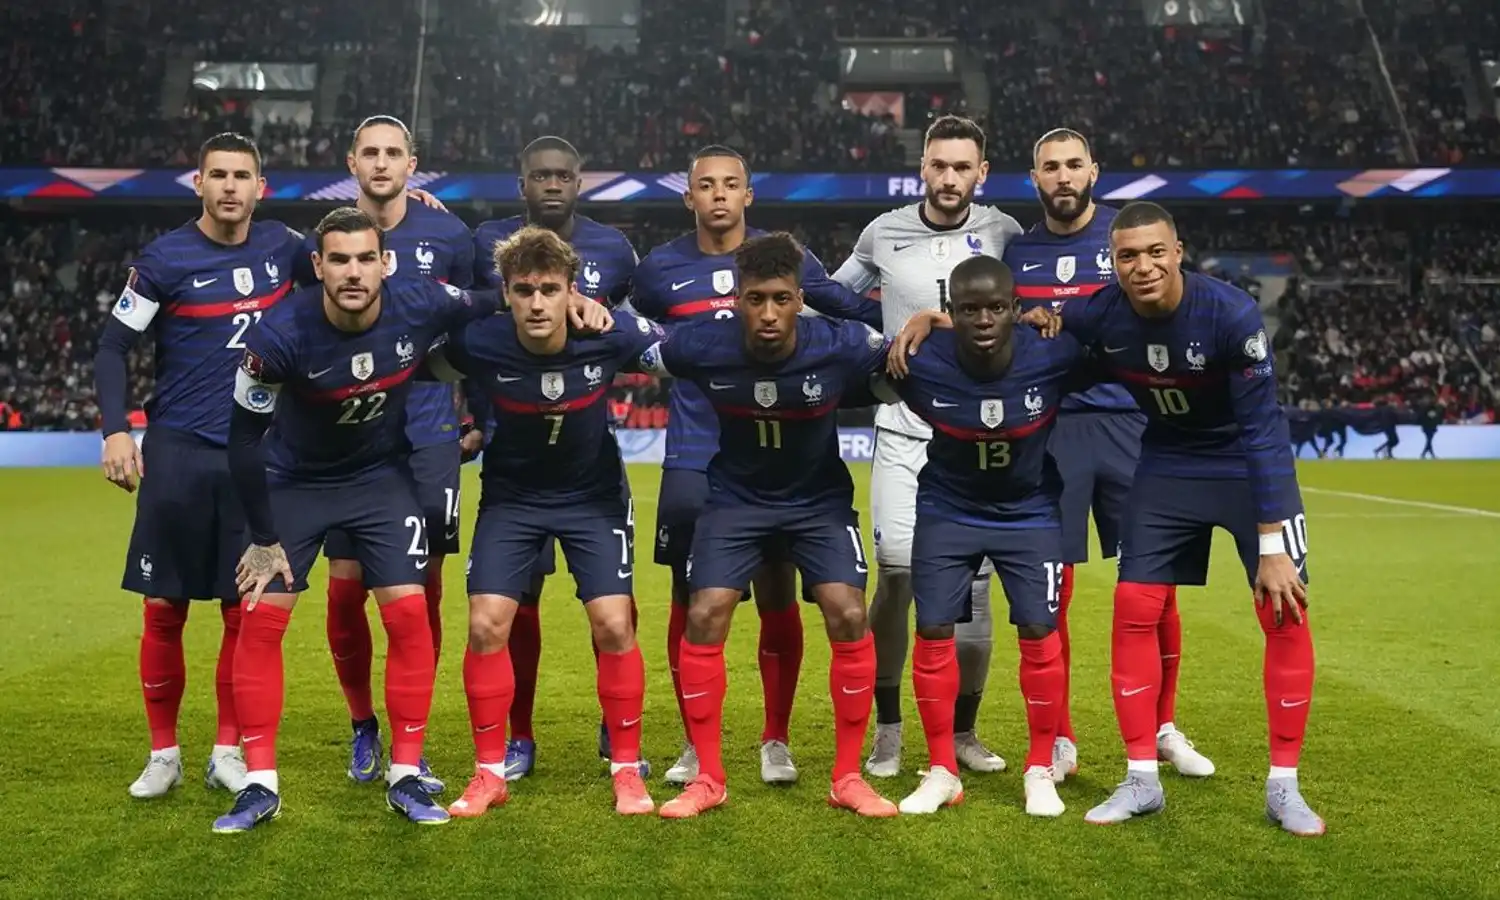 Национальная сборная франции по футболу